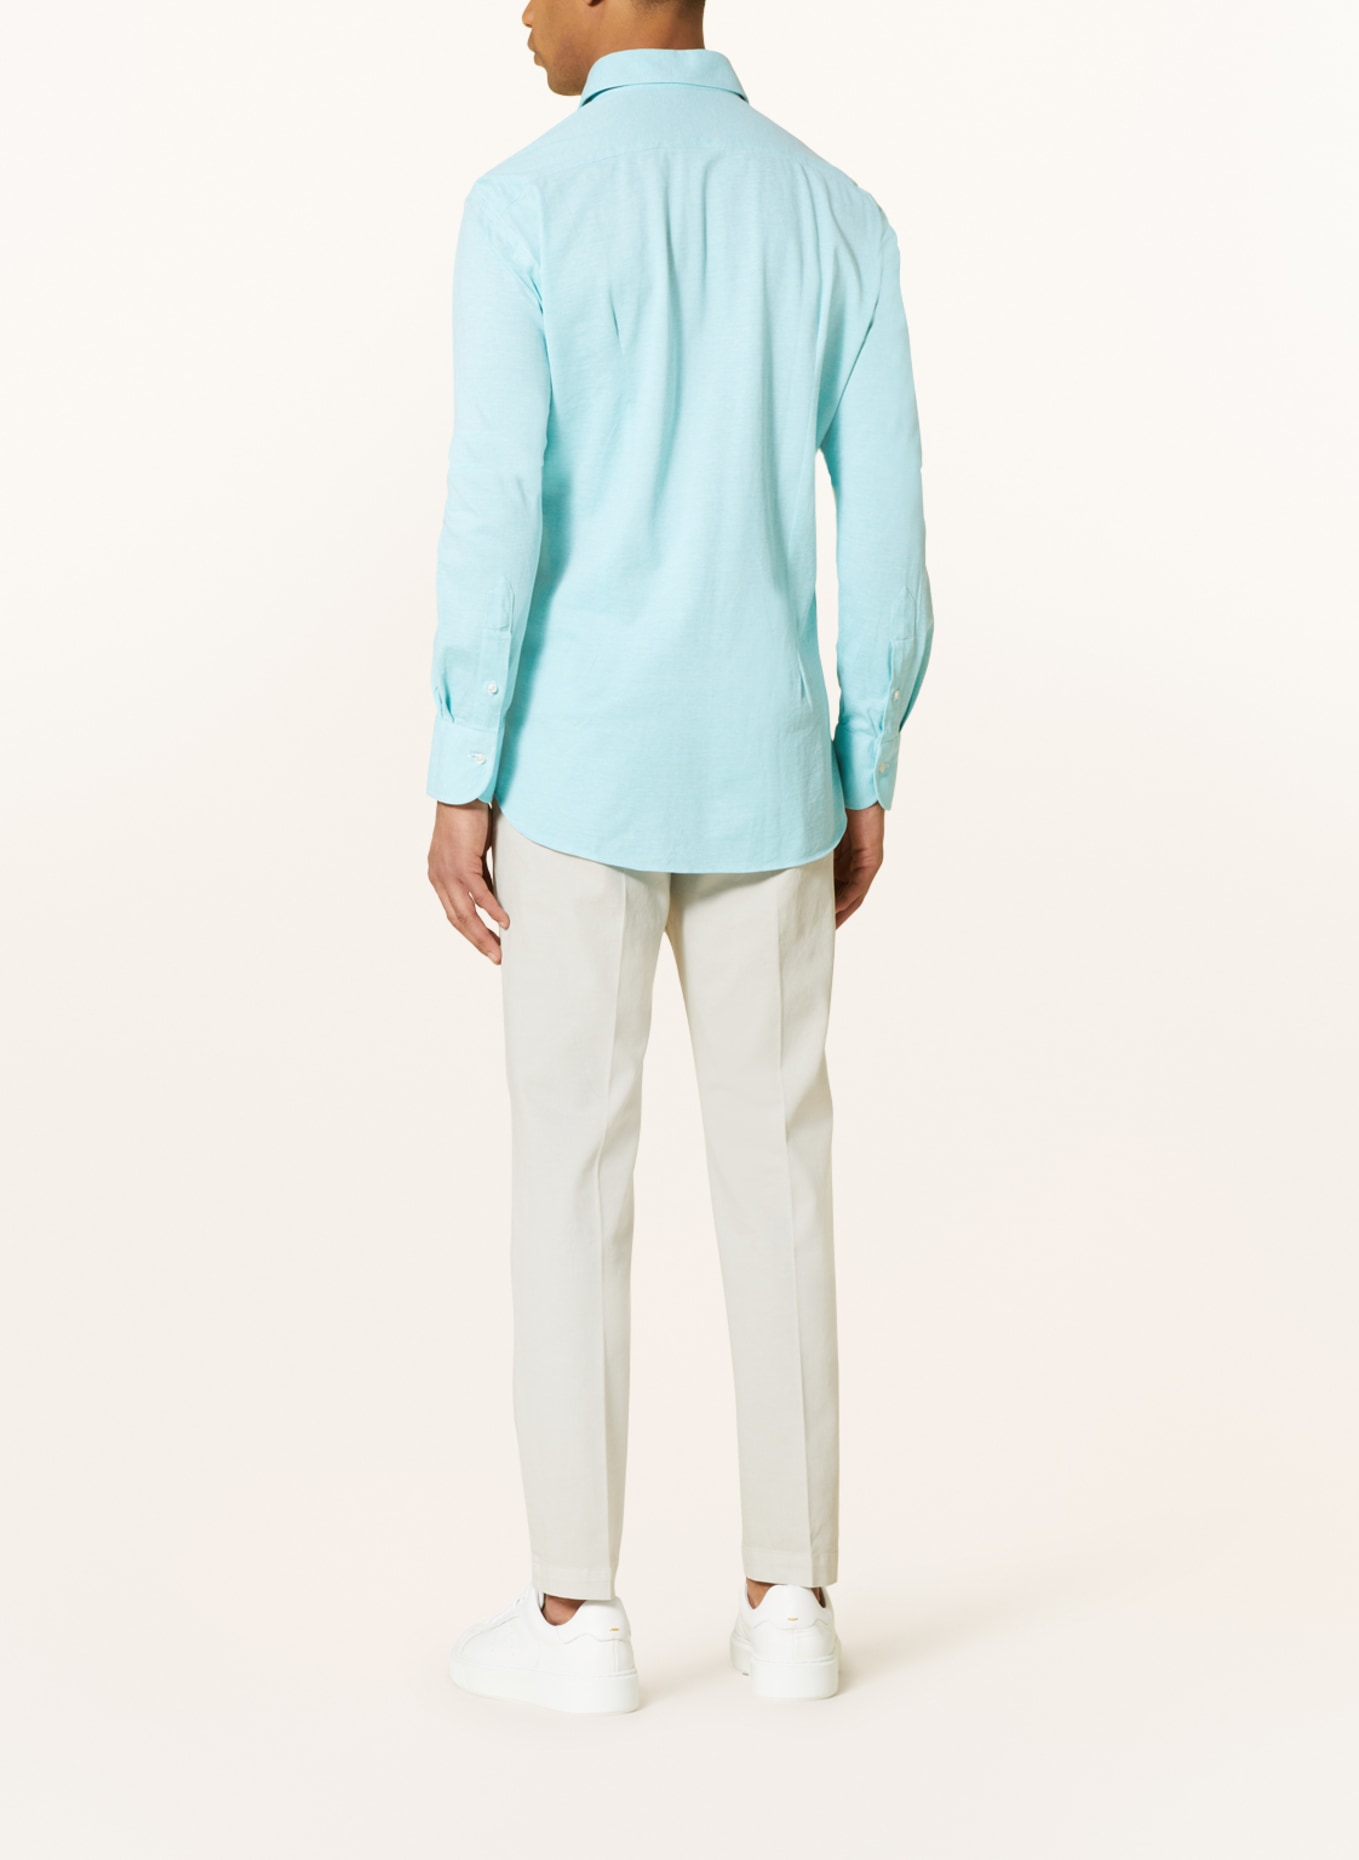 CHAS Piqué shirt ASONI classic fit, Color: NEON BLUE (Image 3)